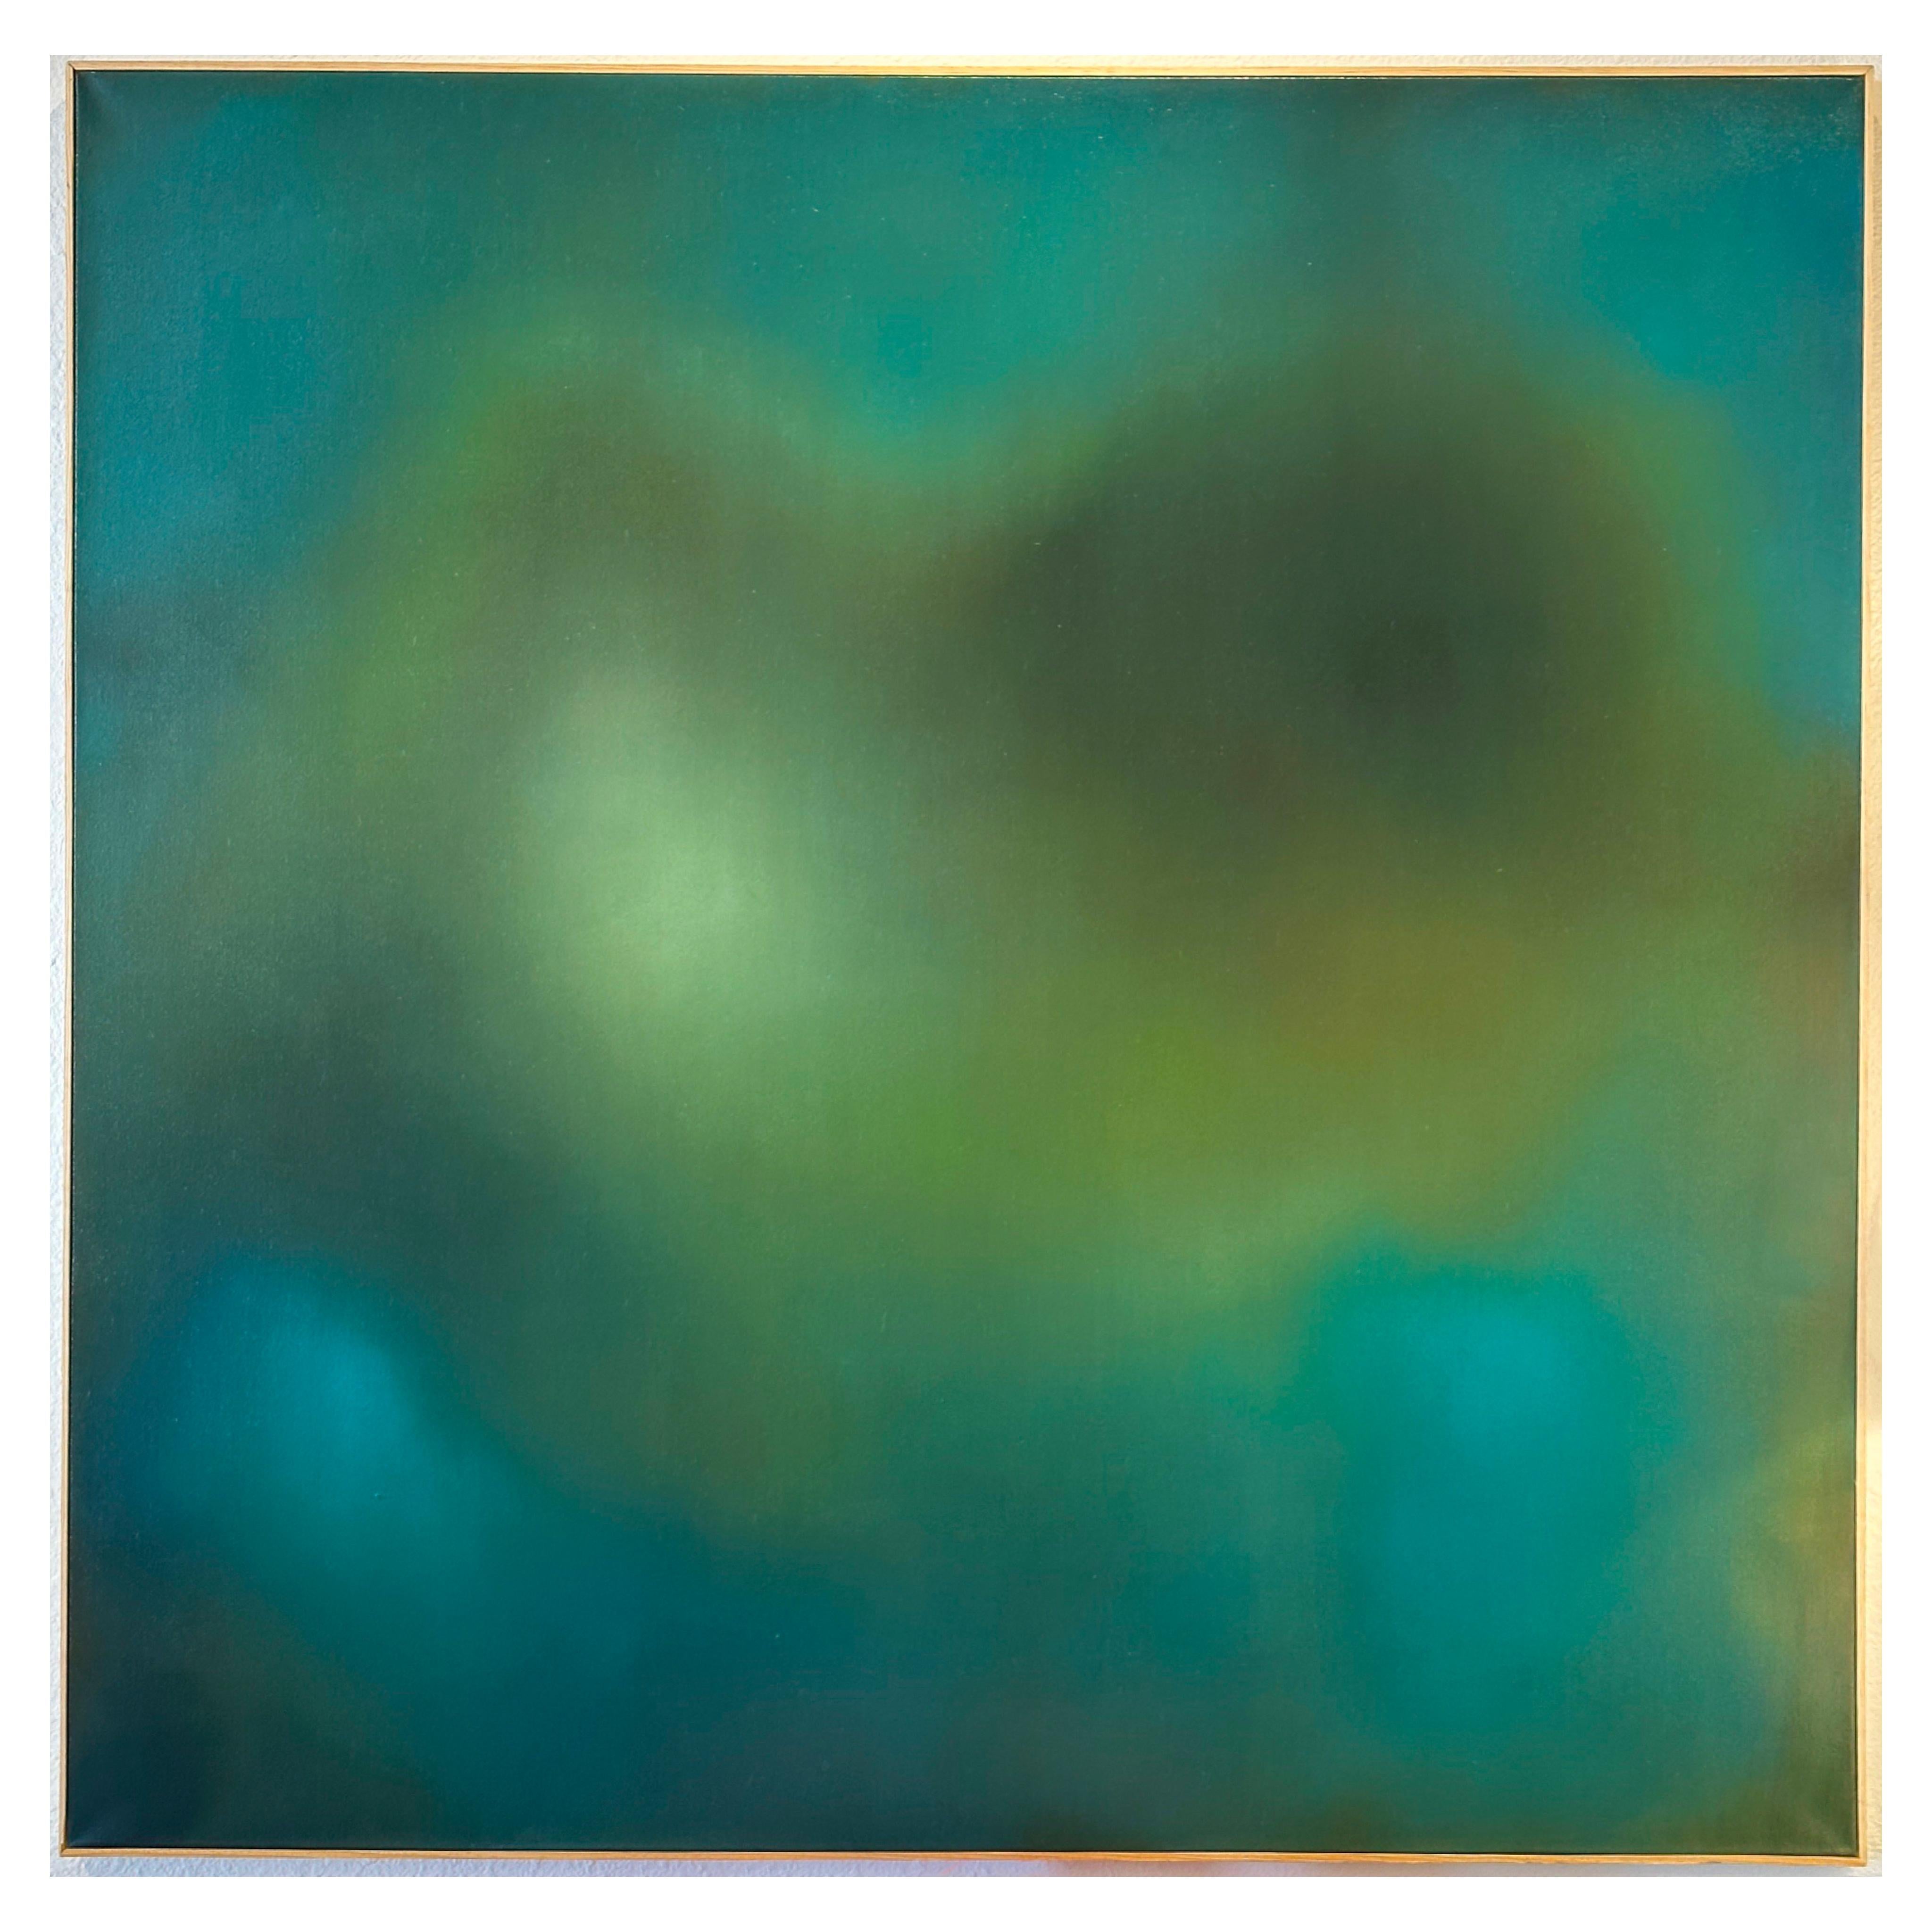 Robin Harker Large Blue-Green Abstract Oil on Canvas California Artist 2023.

Encadré dans un cadre d'artiste en bois naturel. Les bords ne sont pas finis car l'acheteur est censé les encadrer à son goût. 

Signé au verso.

DIMENSIONS :
48